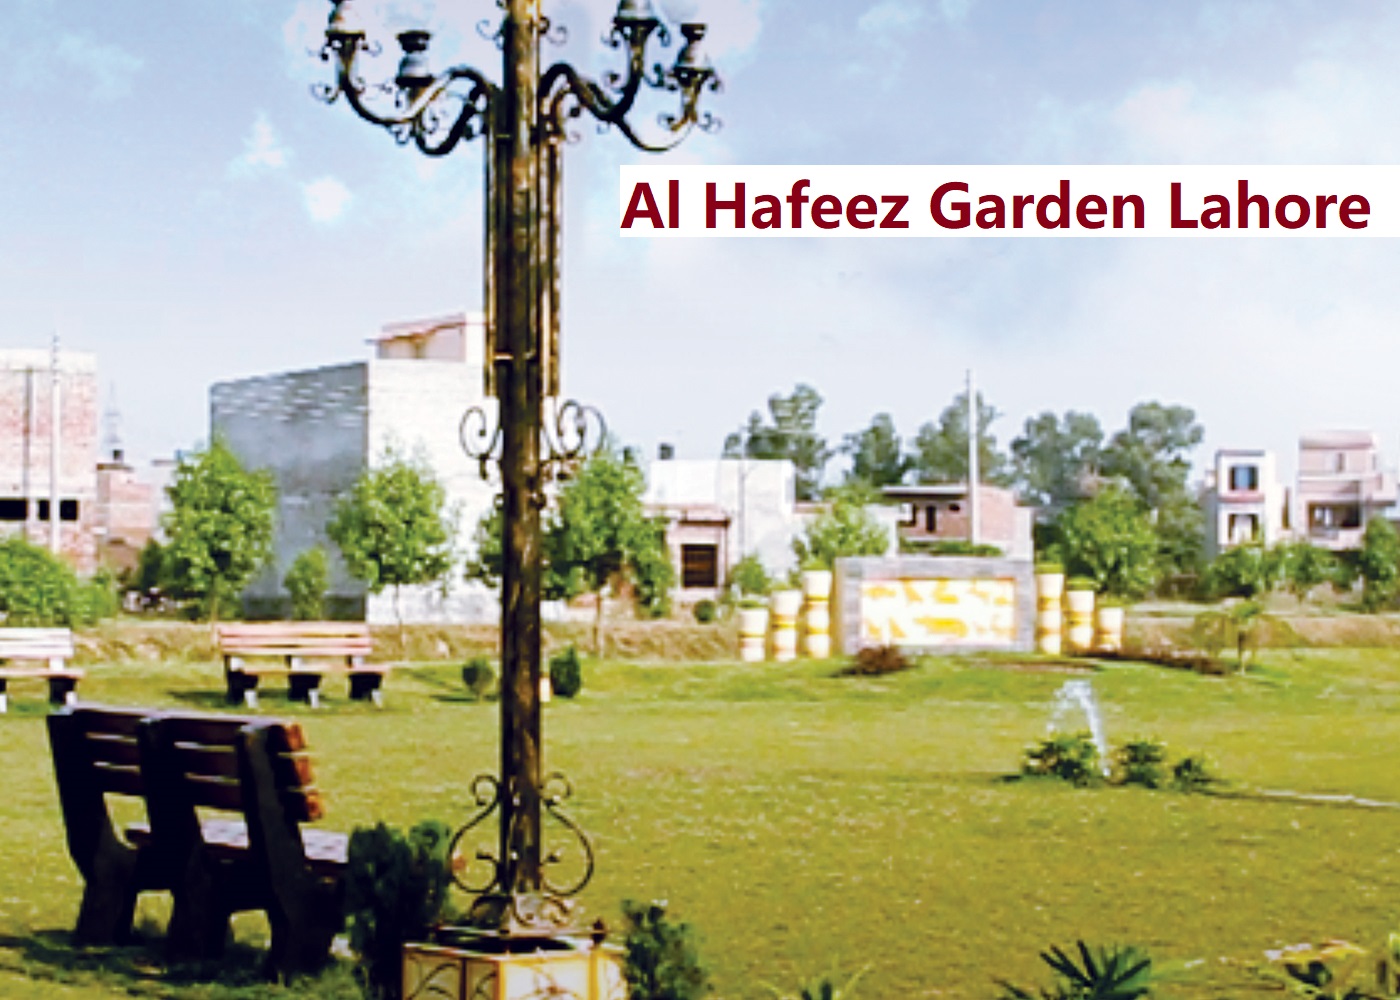 Al Hafeez Garden Lahore